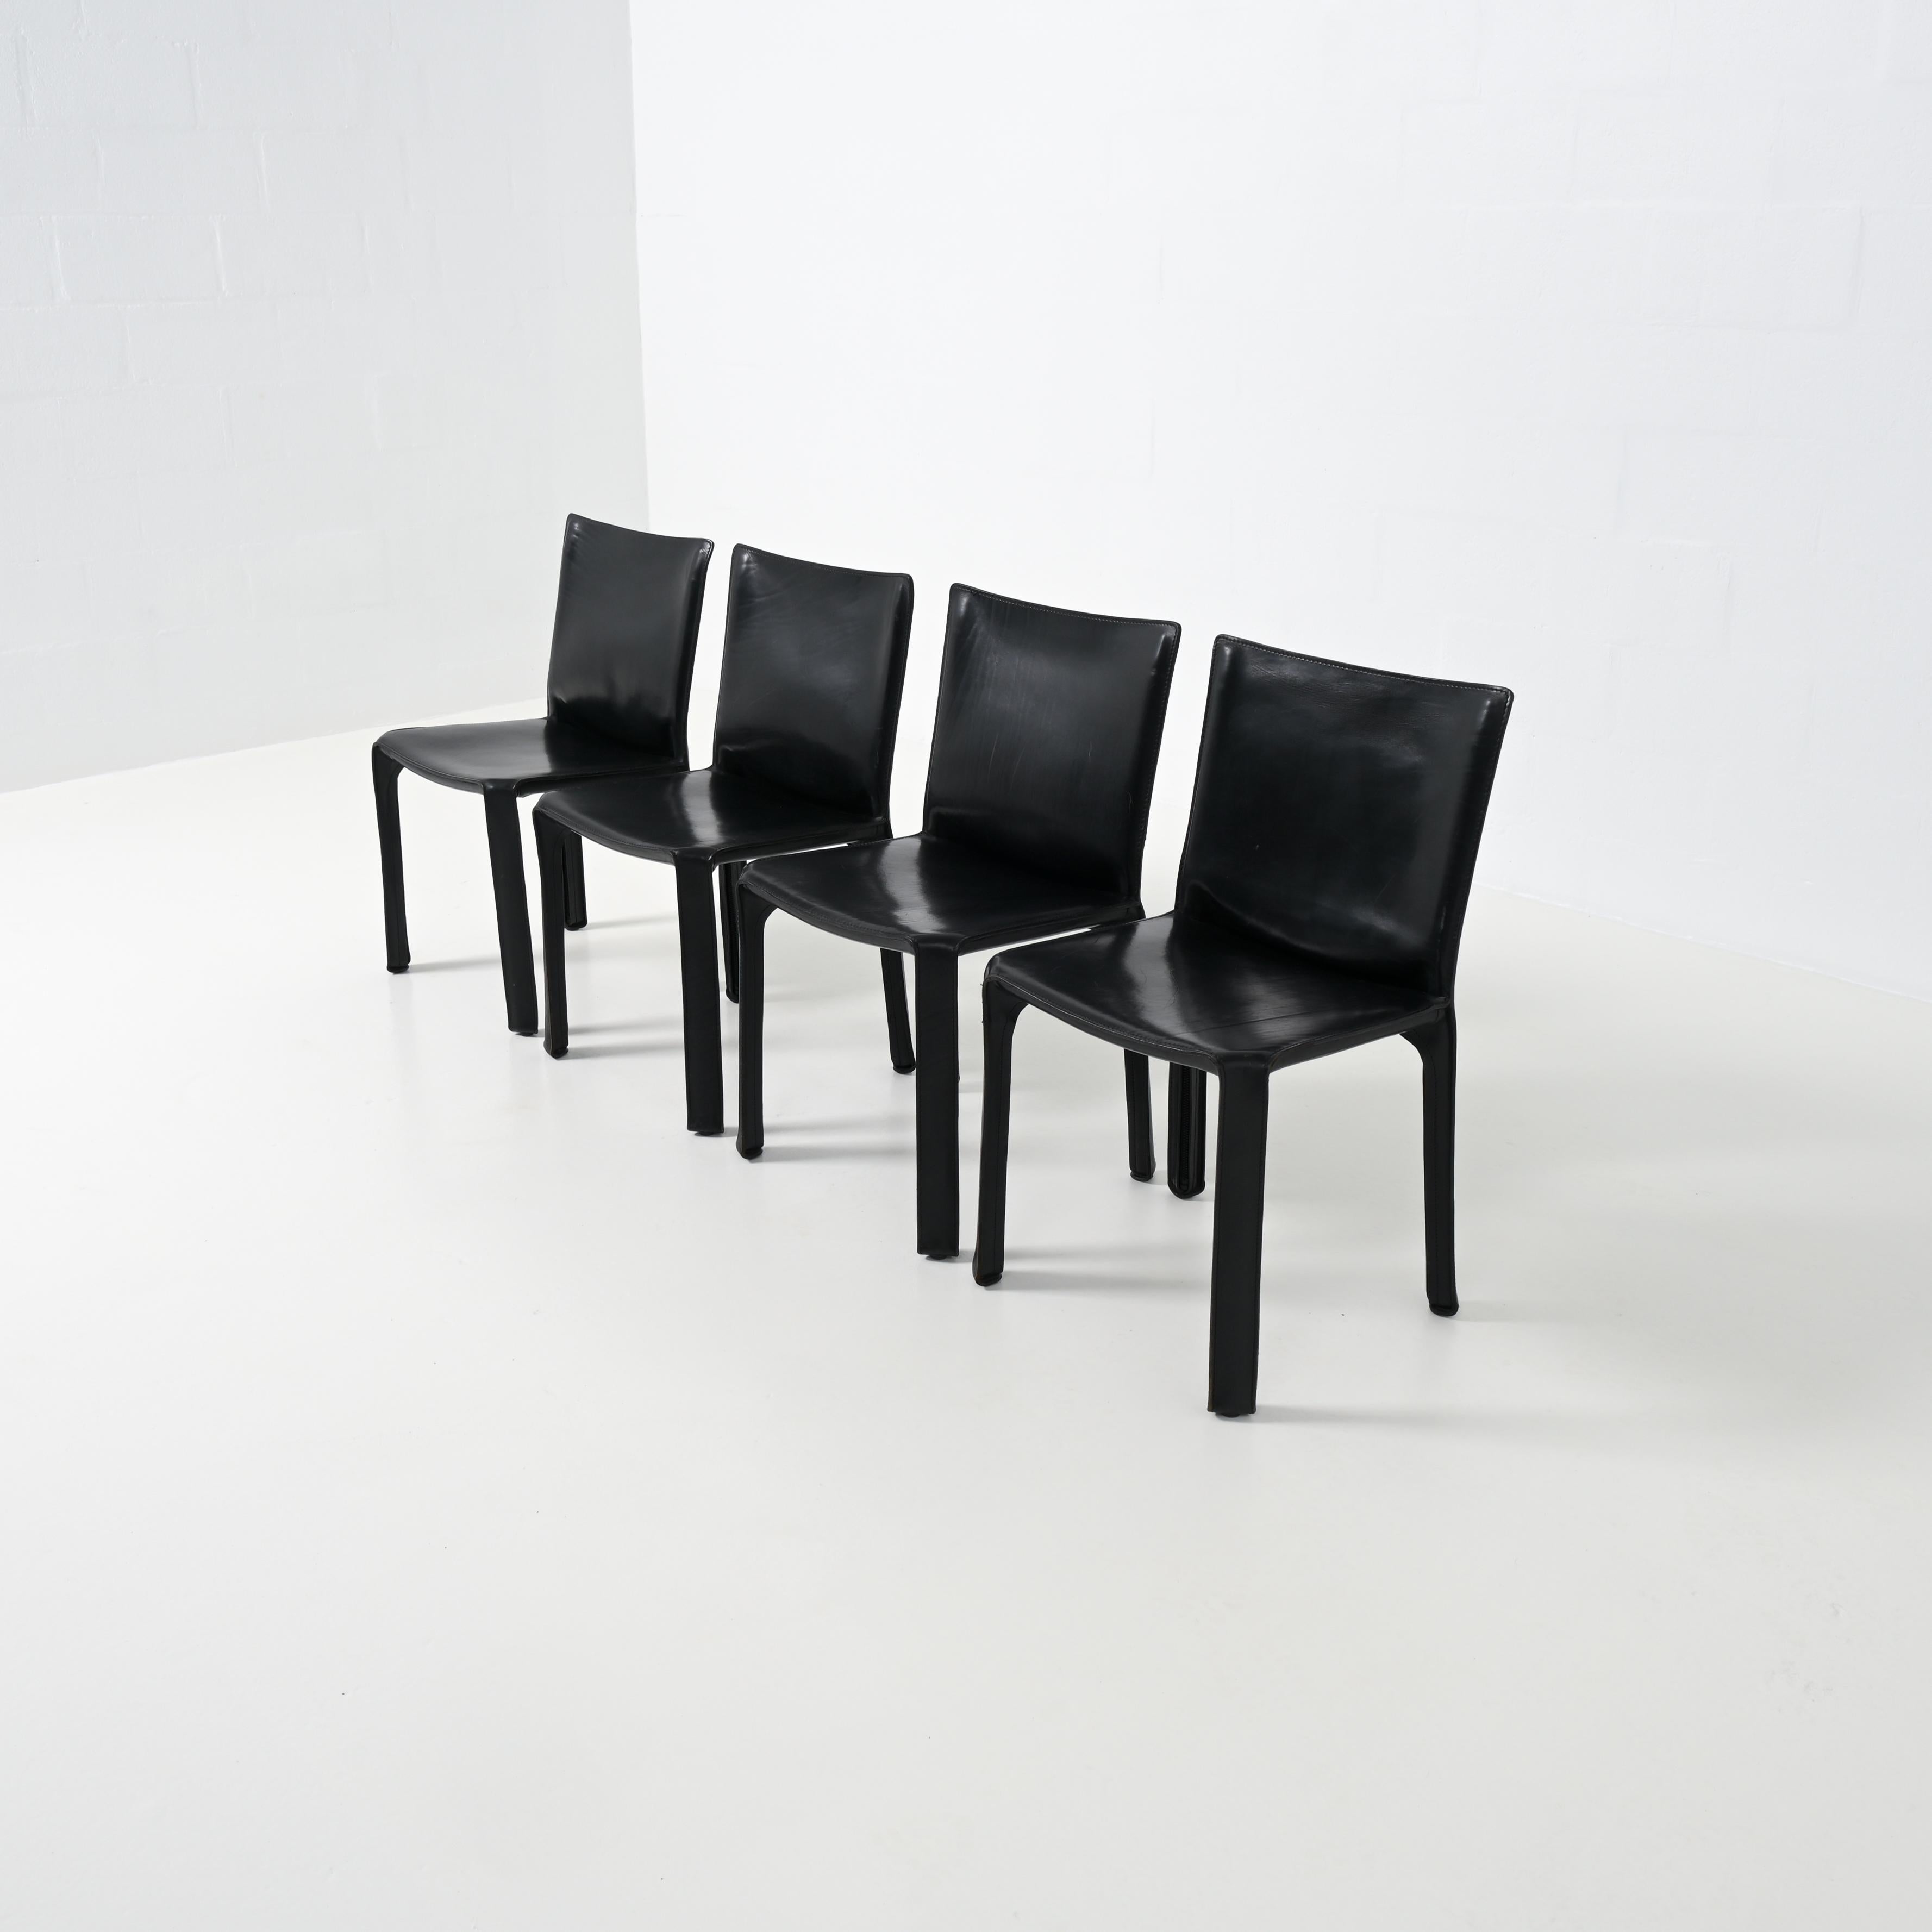 Der CAB-Stuhl wurde 1977 von Mario Bellini für Cassina, Italien, entworfen. Mario Bellini (1935) ist ein italienischer Designer und Architekt.

Der Stuhl hat ein Skelett aus Stahlrohr und das gespannte, genähte Leder ist mit vier Reißverschlüssen am